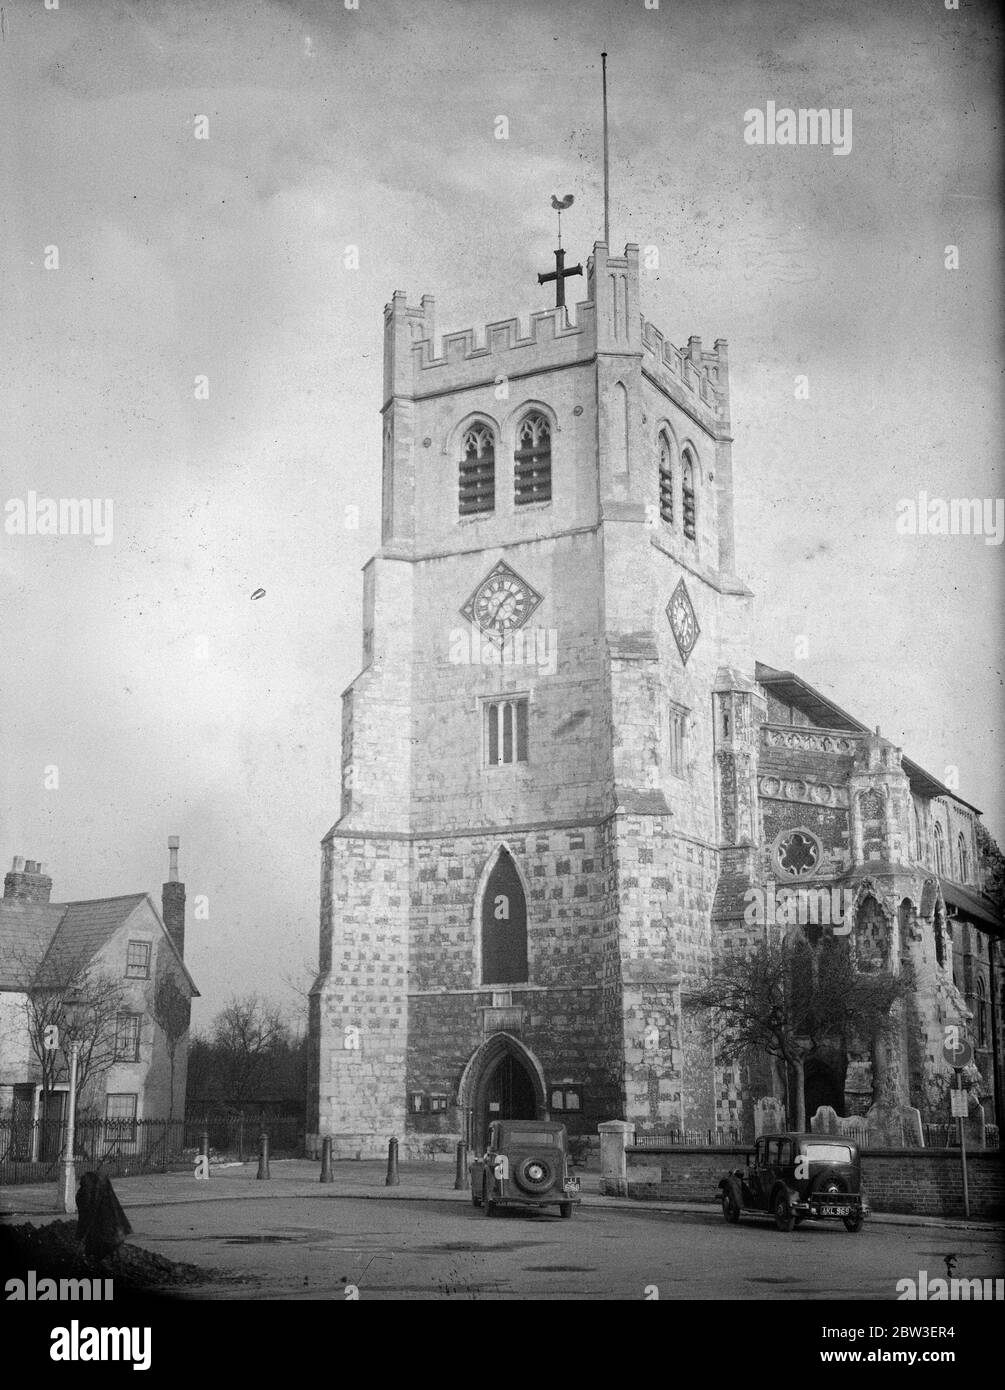 L'église de l'abbaye de Waltham a 875 ans cette année , construite dans les jours lointains du roi Canute et du roi Harold . 15 janvier 1935 Banque D'Images